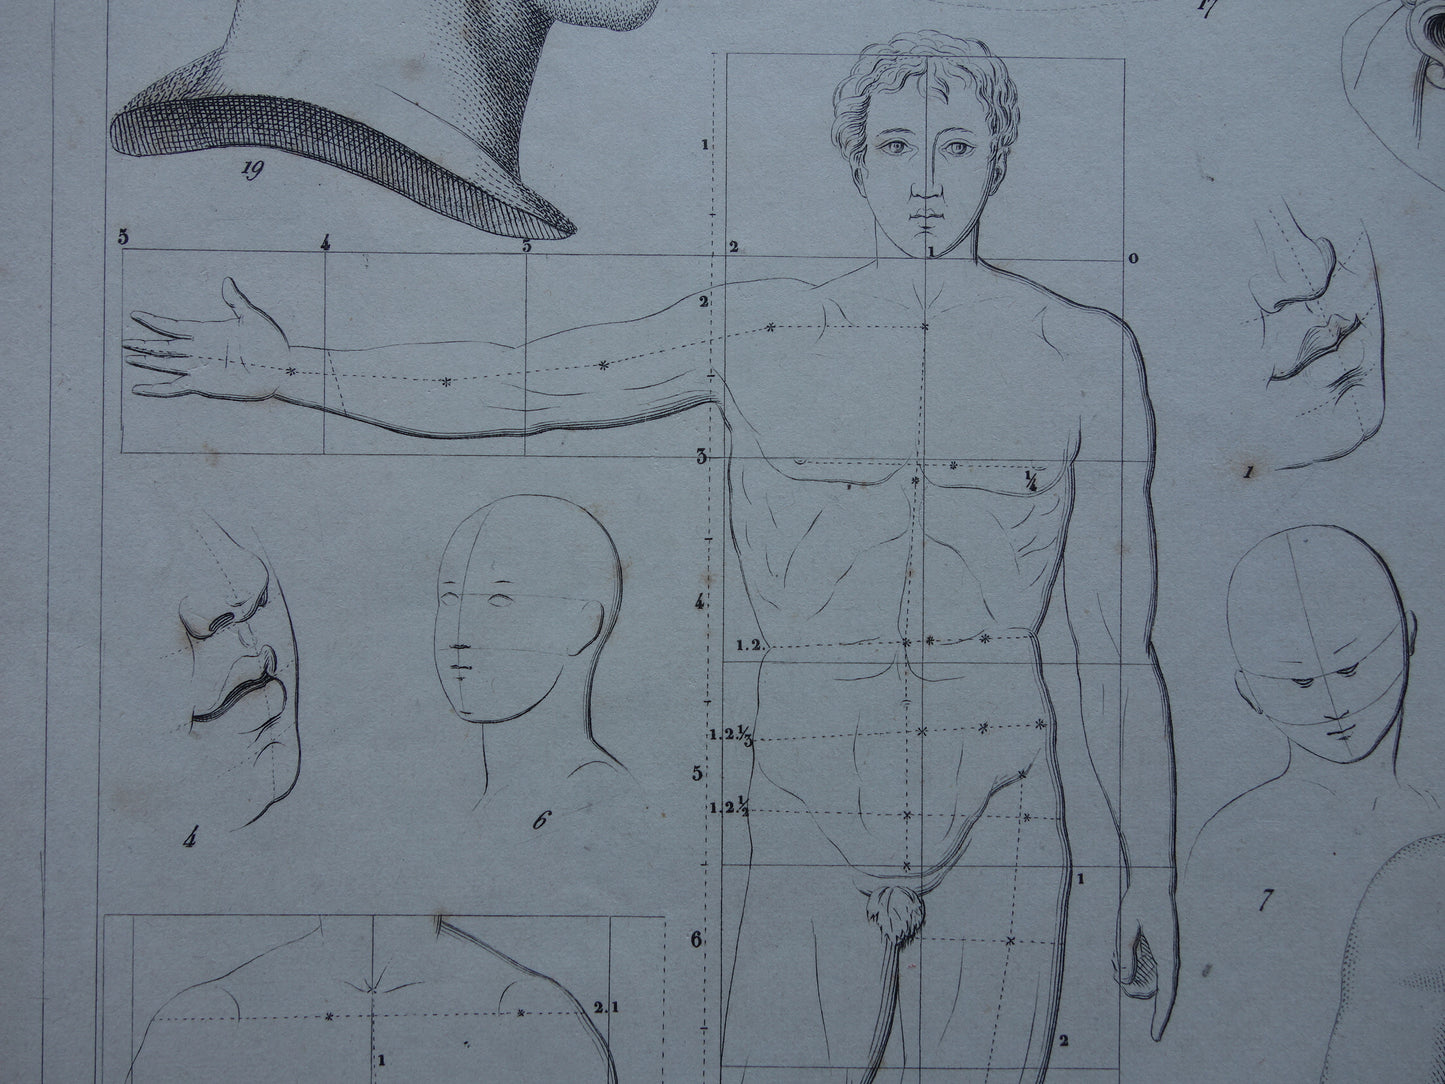 Oude prent schilderkunst theorie proporties van het menselijk lichaam originele antieke illustratie vintage prints